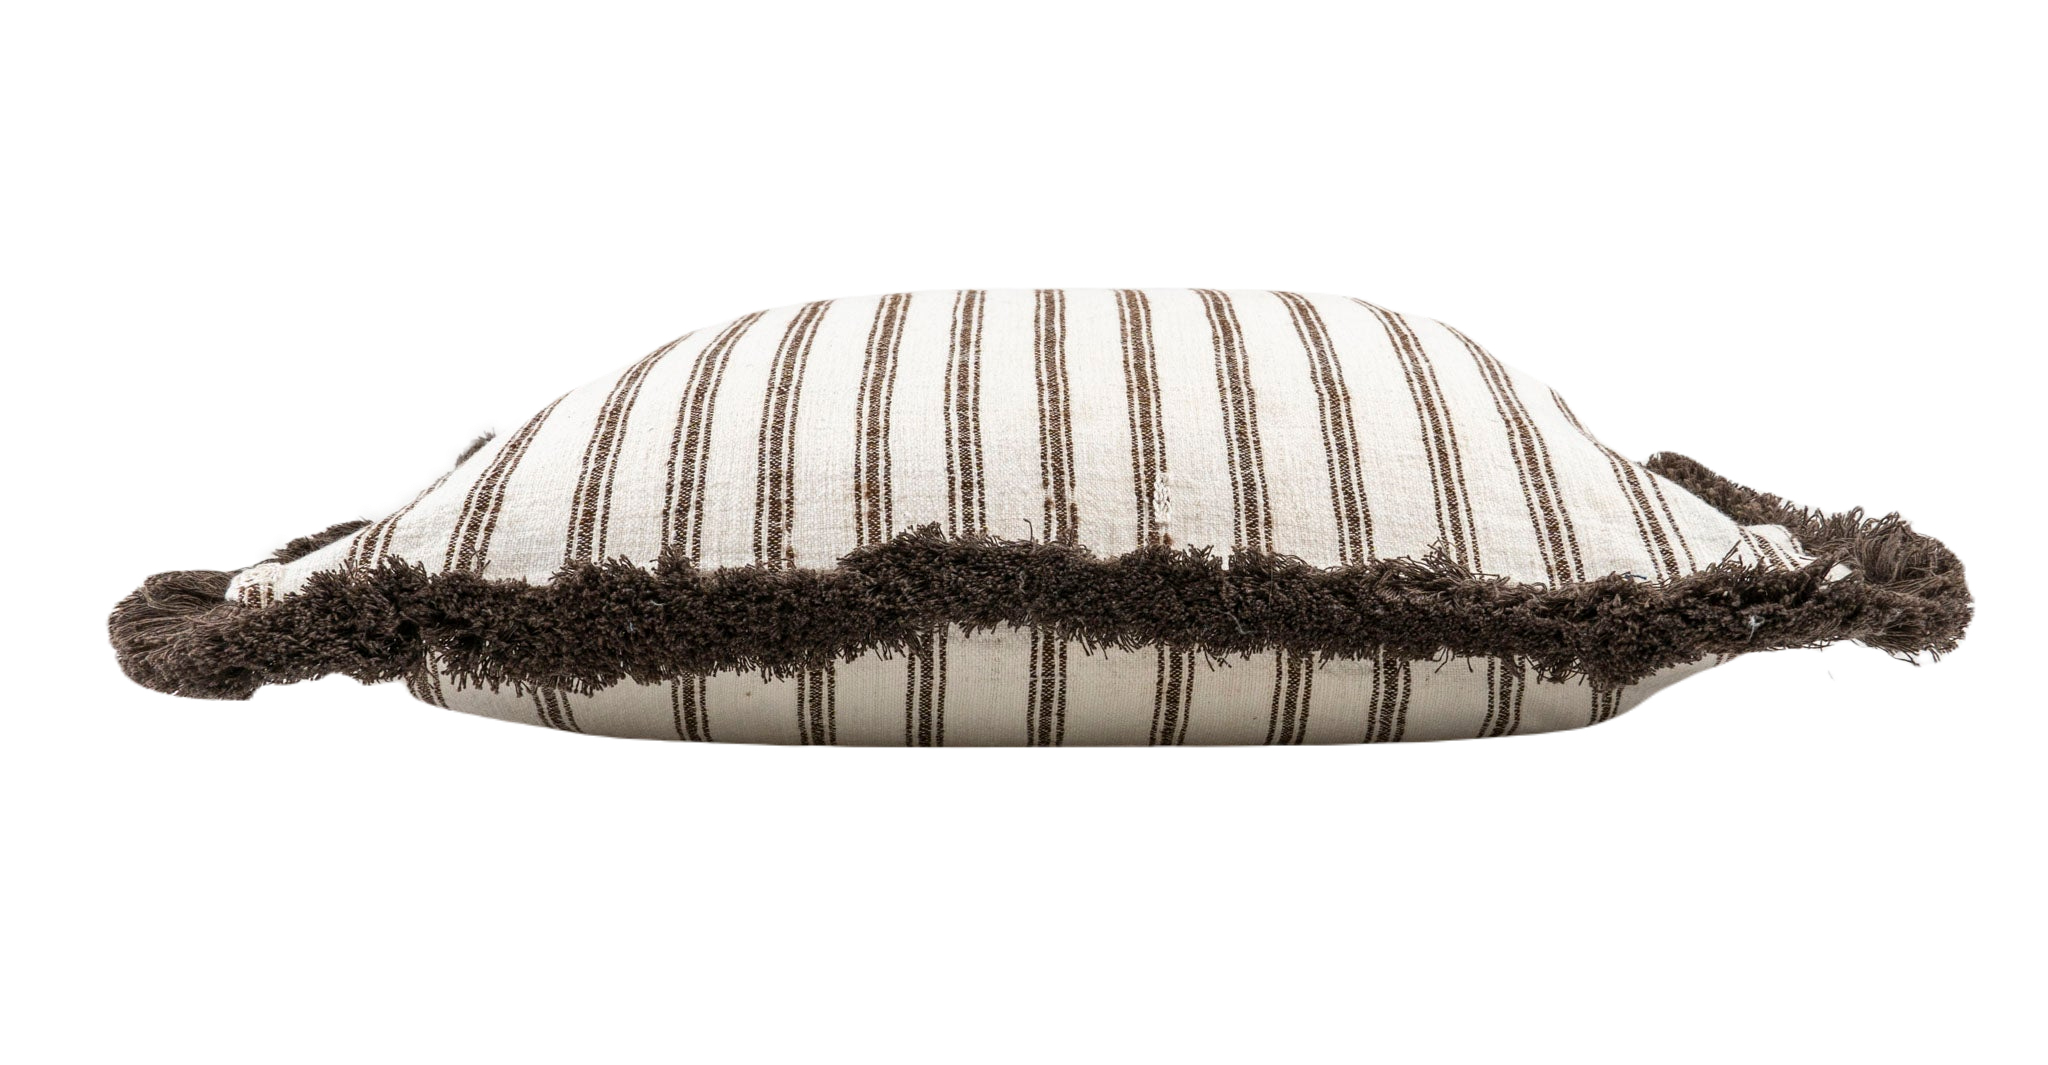 Pillow: Handwoven antique Bulgarian cotton - P209